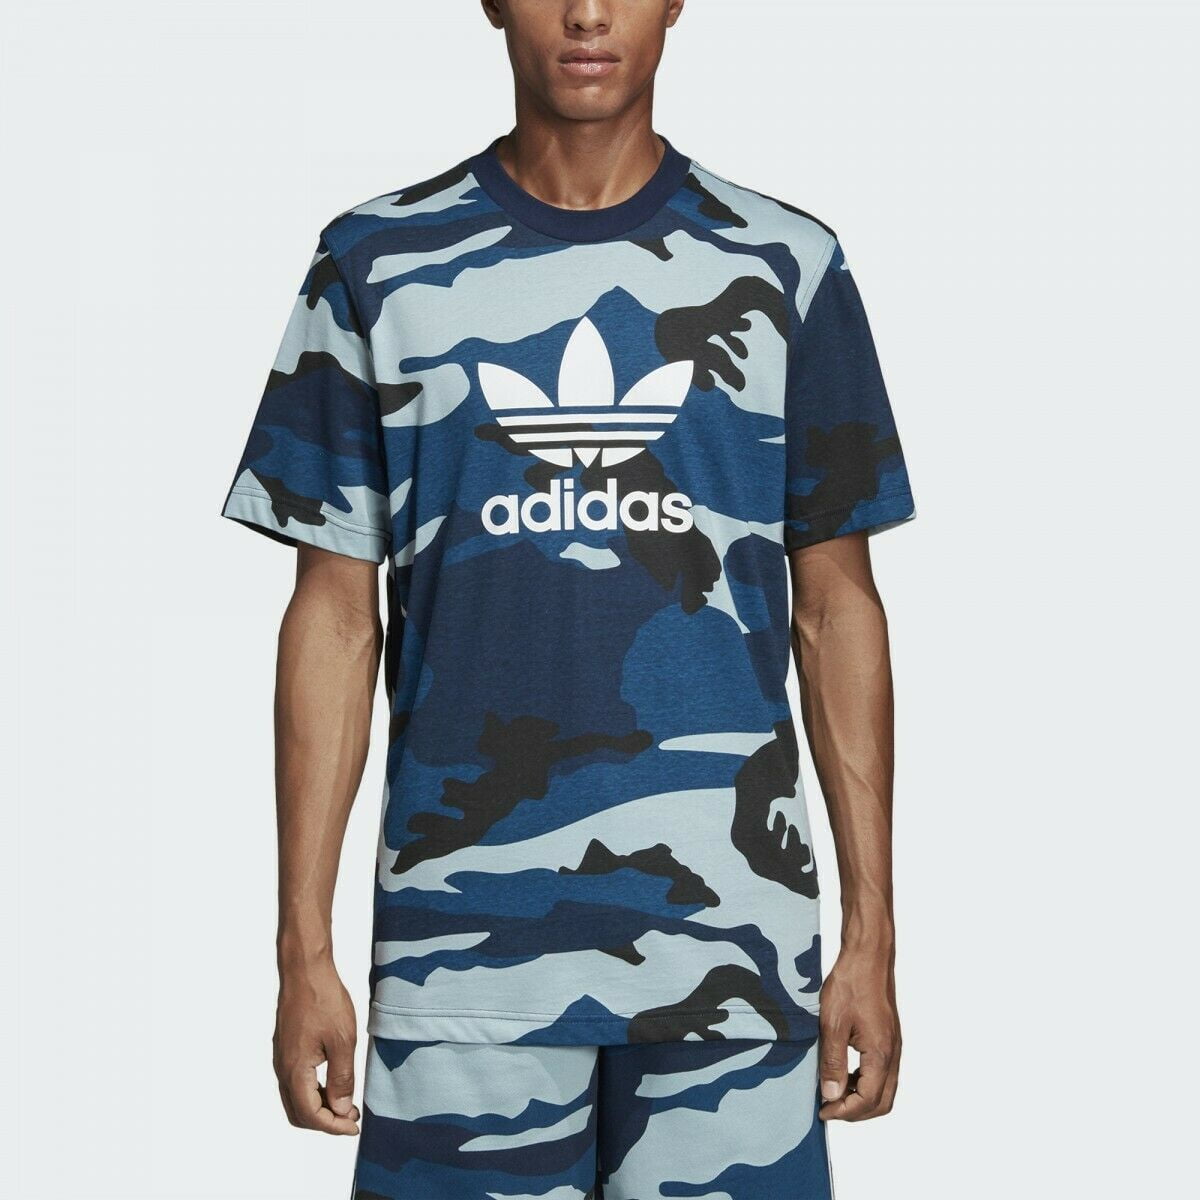 Adidas Originals Men's Trefoil T-Shirt DV2074 Walmart.com